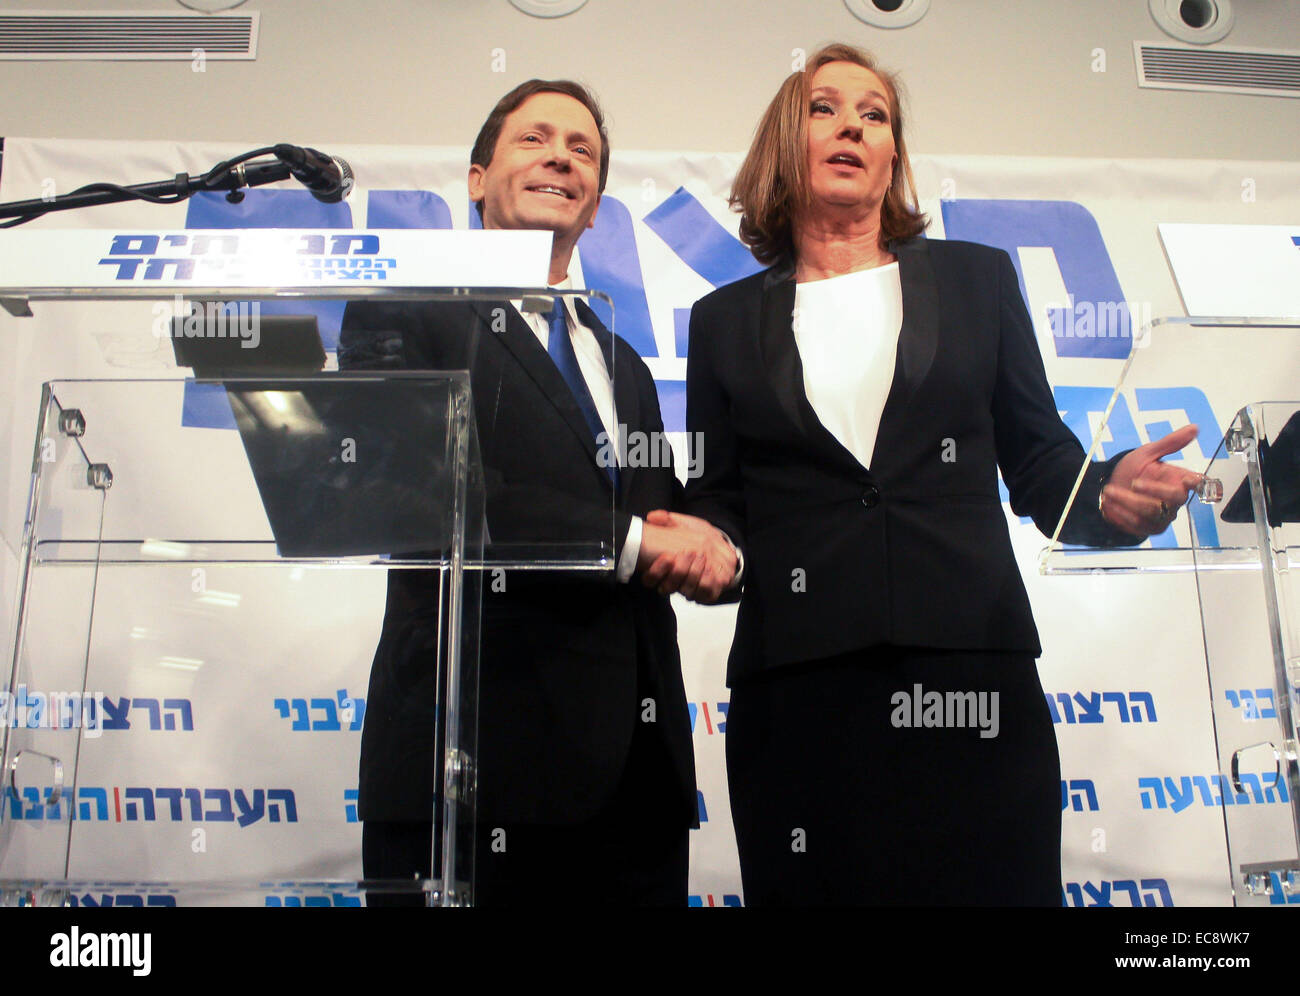 (141210) - TEL AVIV, Dic 10, 2014 (Xinhua) -- laburisti israeliani chief Yitzhak Herzog (L) scuote le mani con Israele dell ex ministro della giustizia Tzipi Livni durante una conferenza stampa a Tel Aviv, Israele, a Dic. 10, 2014. Israele dell ex ministro della giustizia Tzipi Livni e il Partito Laburista chief Yitzhak Herzog ha annunciato mercoledì sono di unire le vostre mani prima del marzo 17 elezioni. In una conferenza stampa congiunta in Tel Aviv Mercoledì, Herzog, presidente del più grande centro-sinistra opposizione parlamentare e la Livni, capo del centro-sinistra Hatnua partito, ha annunciato il centro-sinistra elenco comune, mirando alla fine Foto Stock